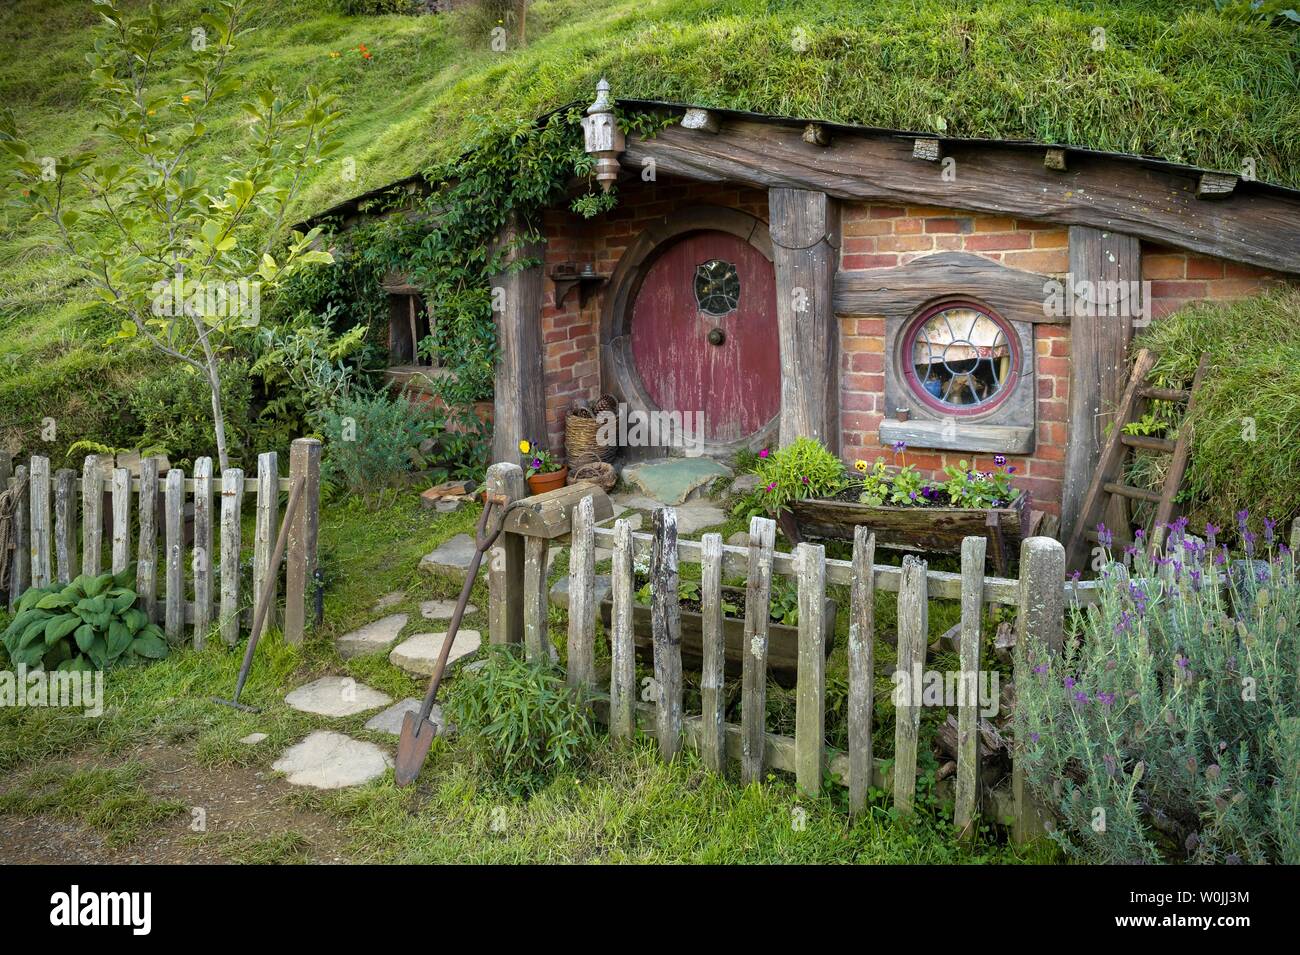 Hobbit cueva con puerta roja, Hobbiton en el shire, ubicación de El Señor de los anillos y el Hobbit Matamata, Waikato, Isla del Norte, Nueva Zelanda Foto de stock